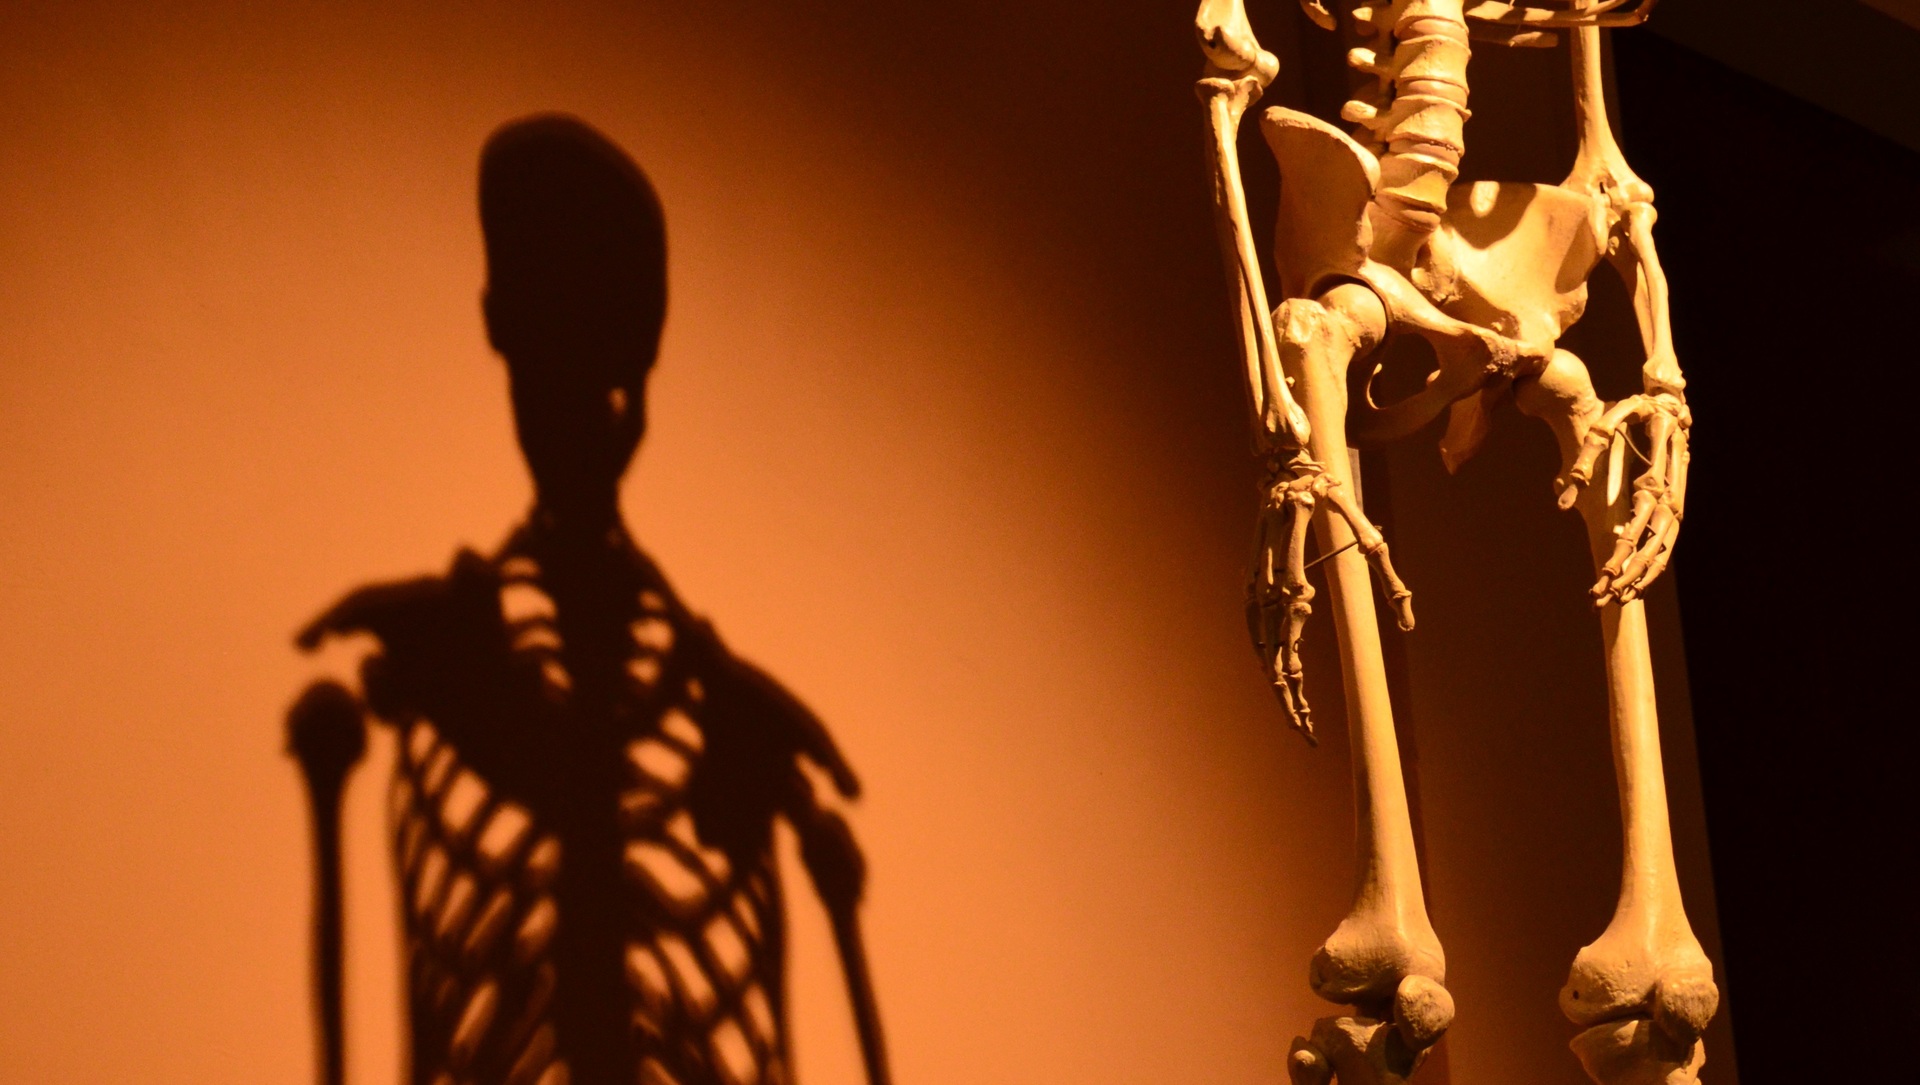 Перевоплотился в скелета. Крепкие кости. Фото скелета с биноклем.